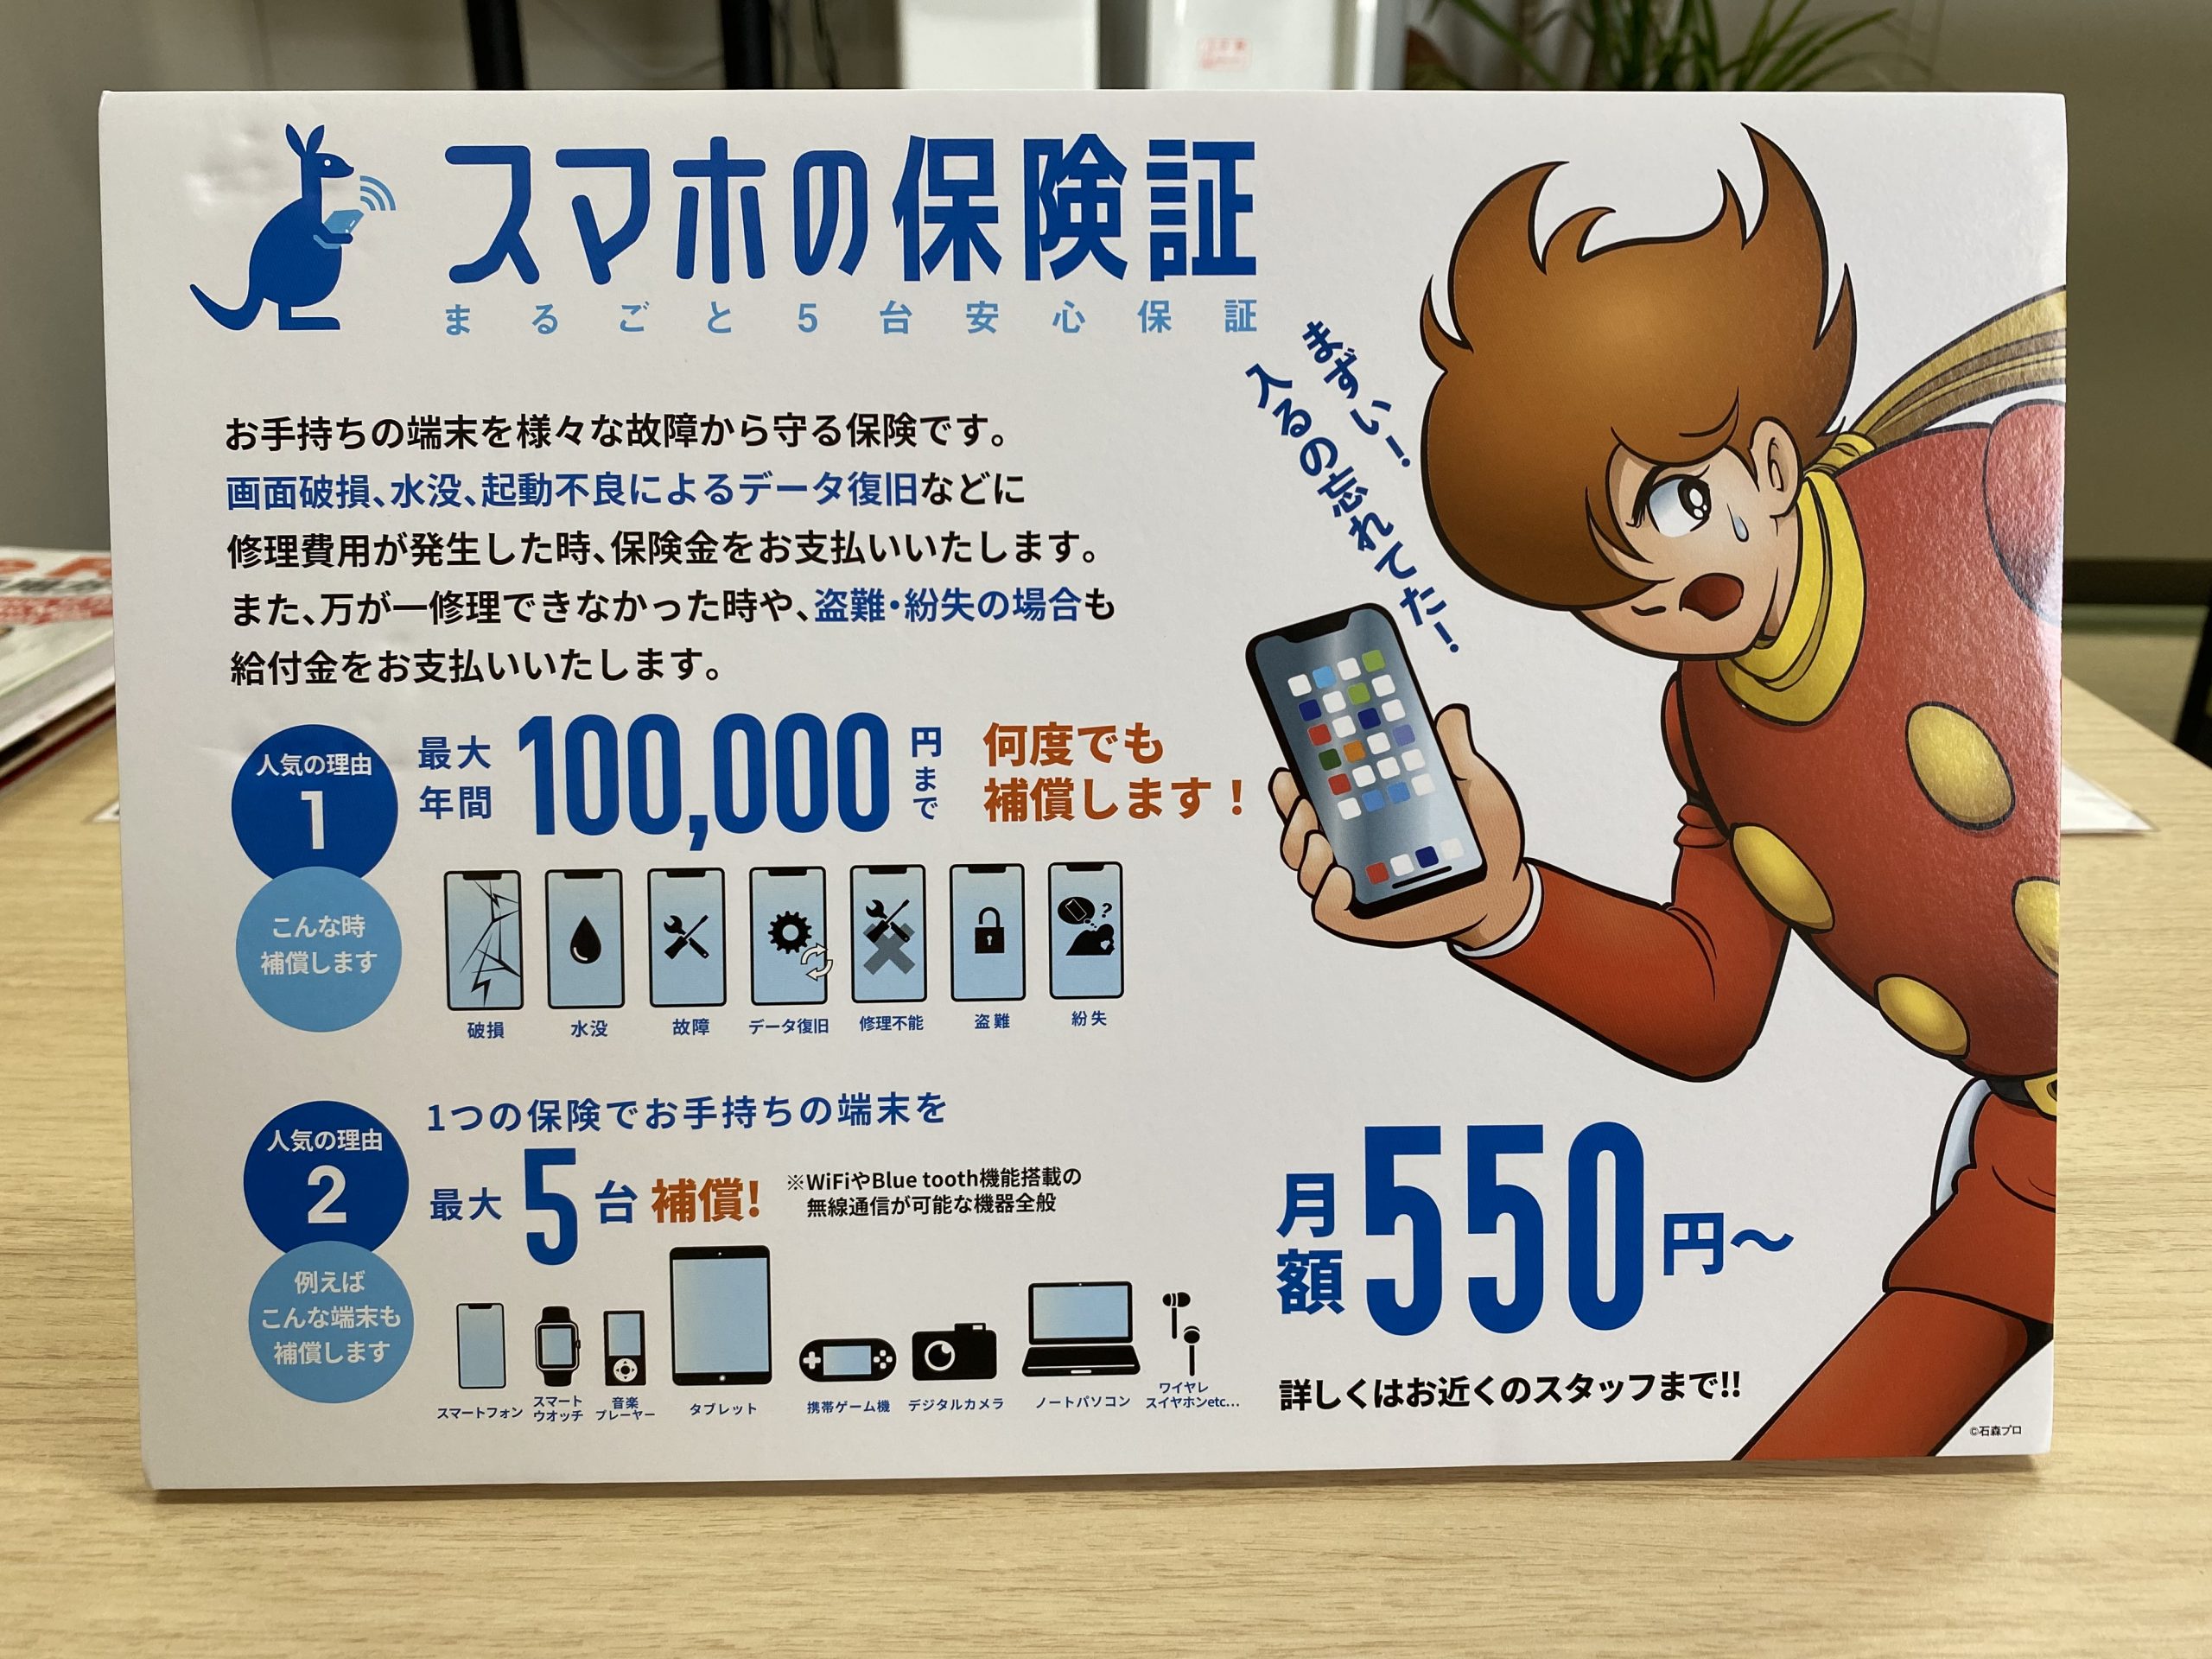 松本市のiPhone修理店舗で、スマホ保険の取扱始めました